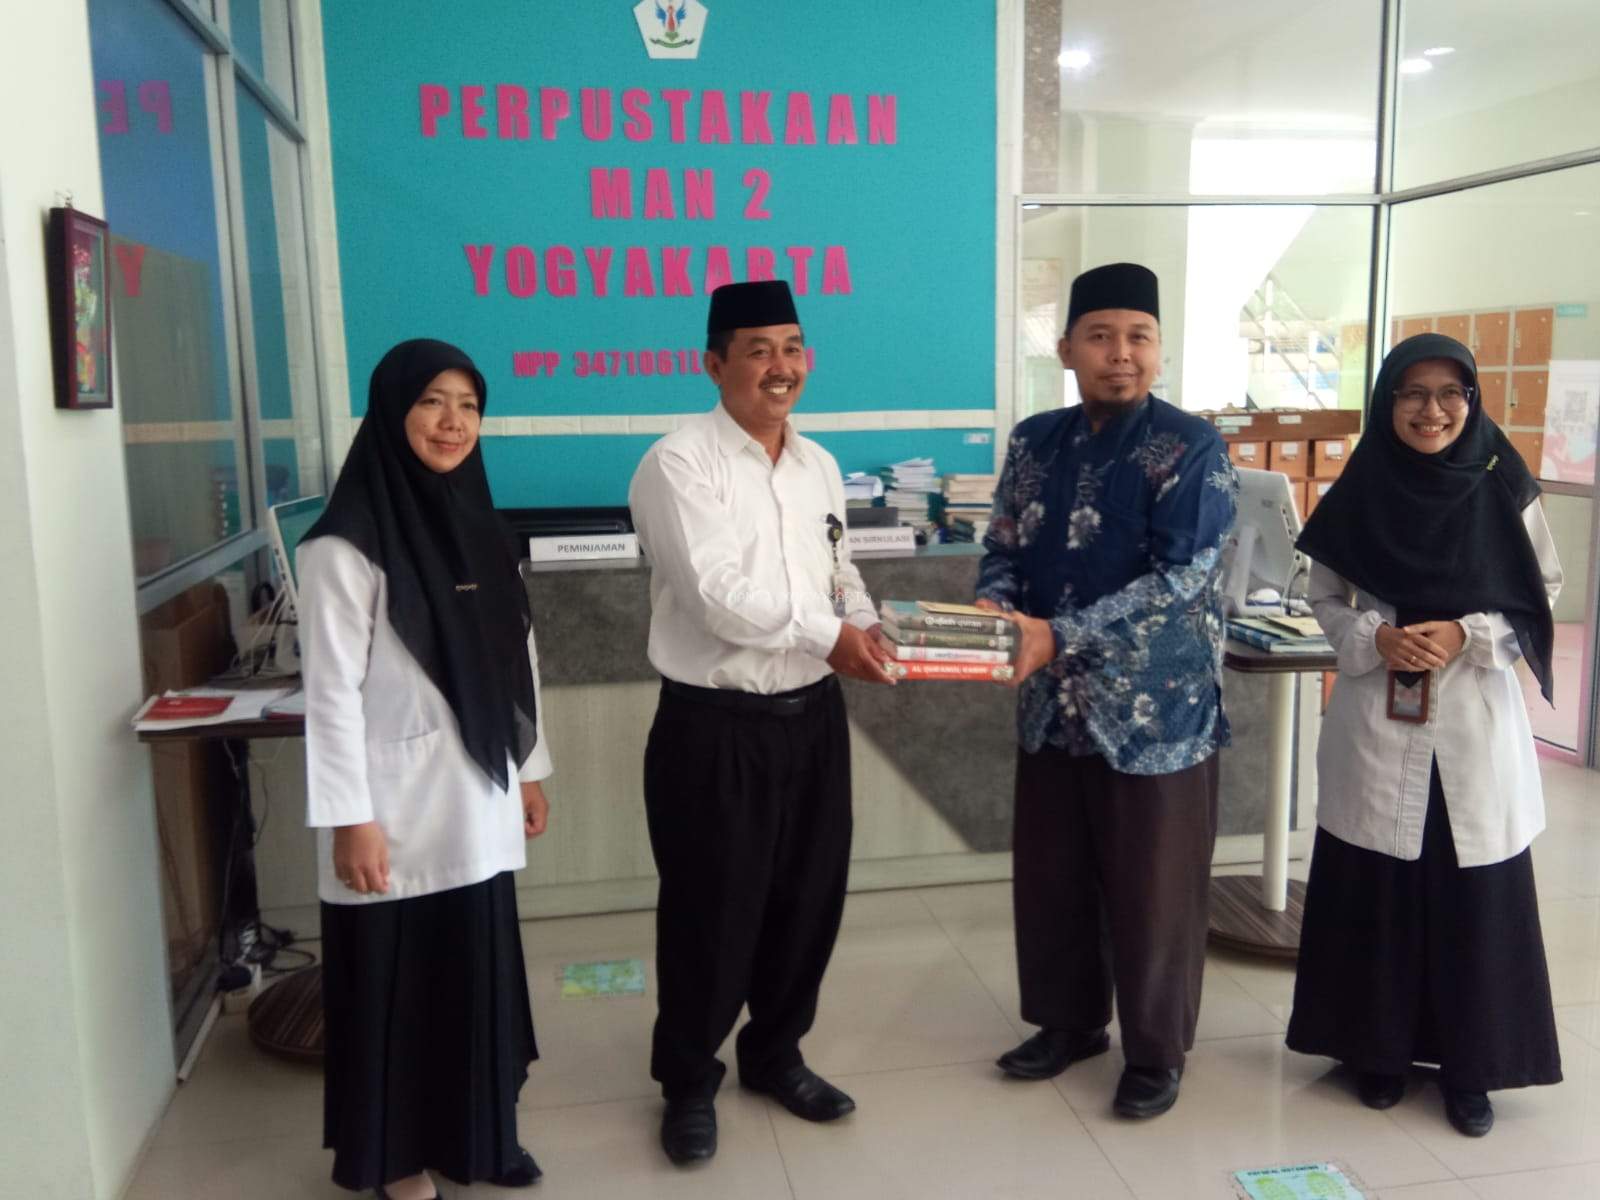 MA Harun Asy Syafi'i Memberikan Hibah Buku ke Perpustakaan MAN 2 Yogyakarta 